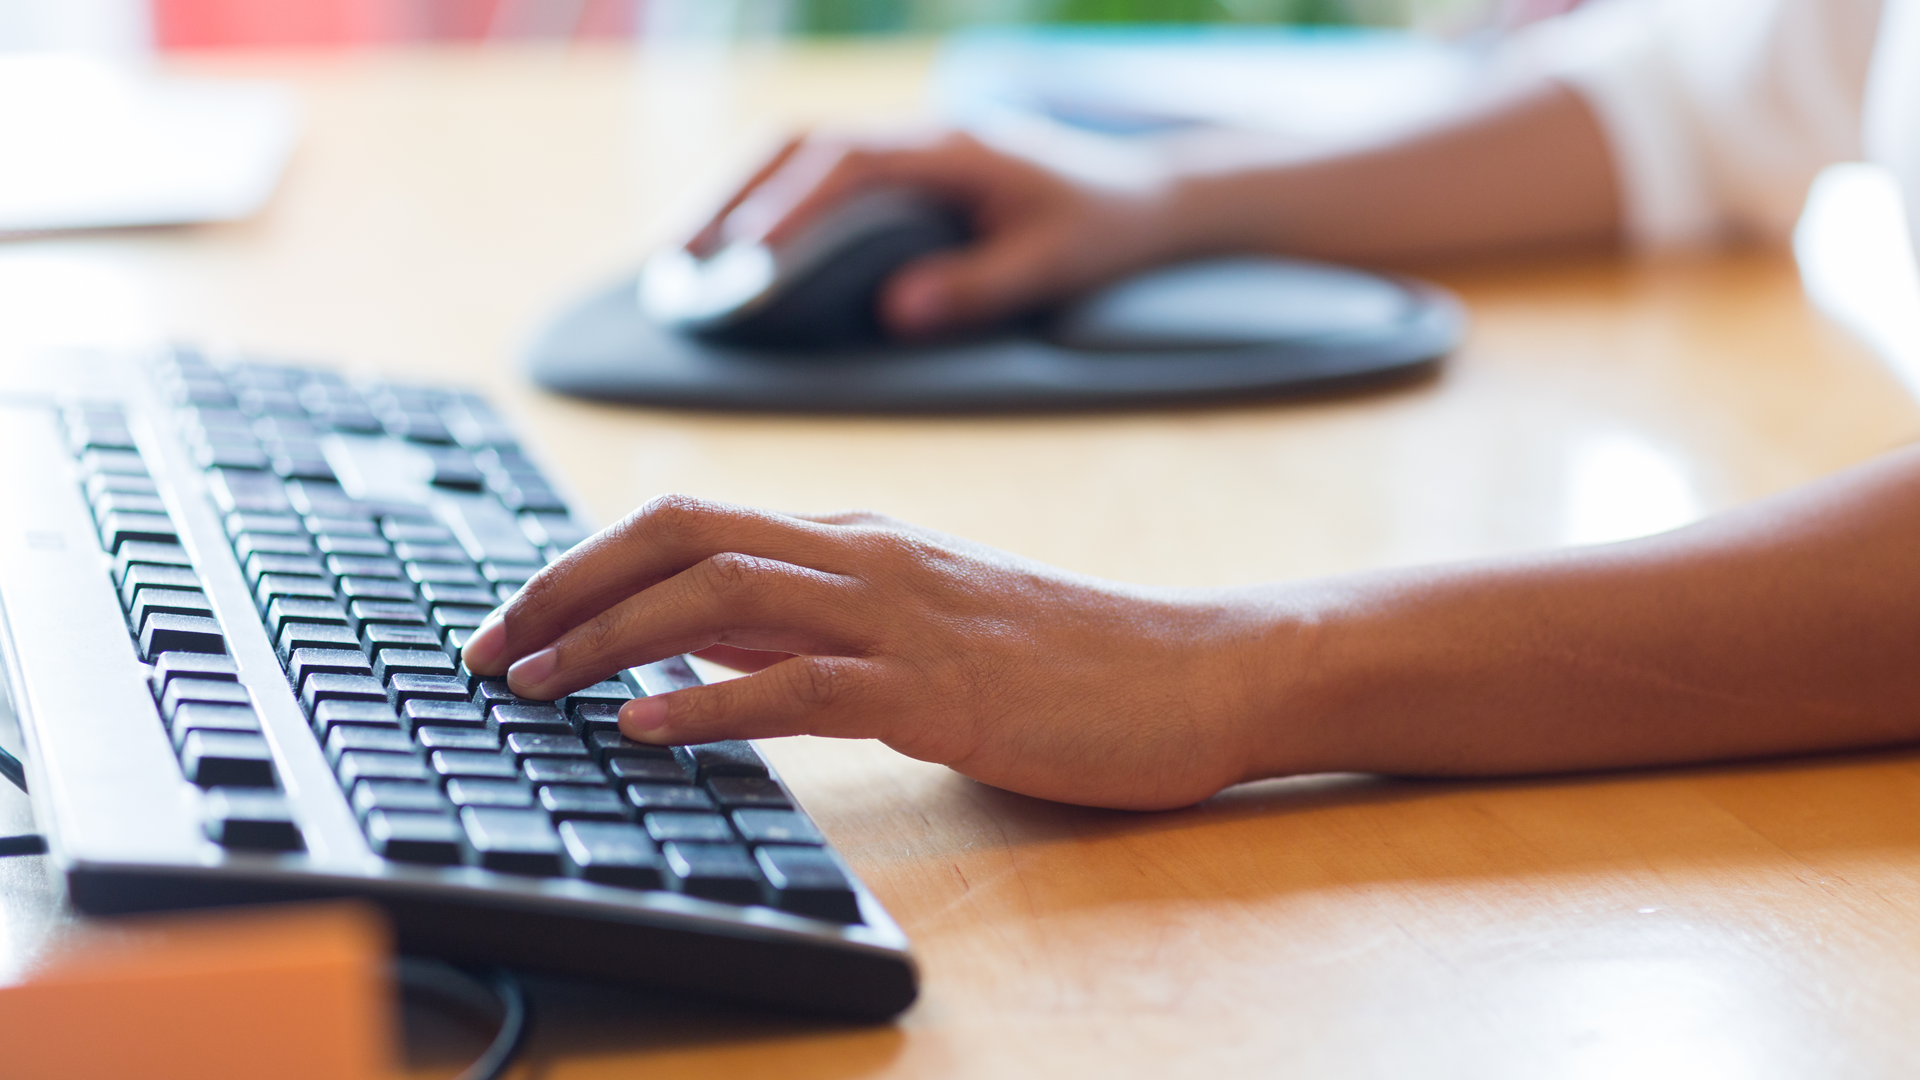 Descubra o melhor tipo de teclado para você. (Foto: Reprodução/Shutterstock)